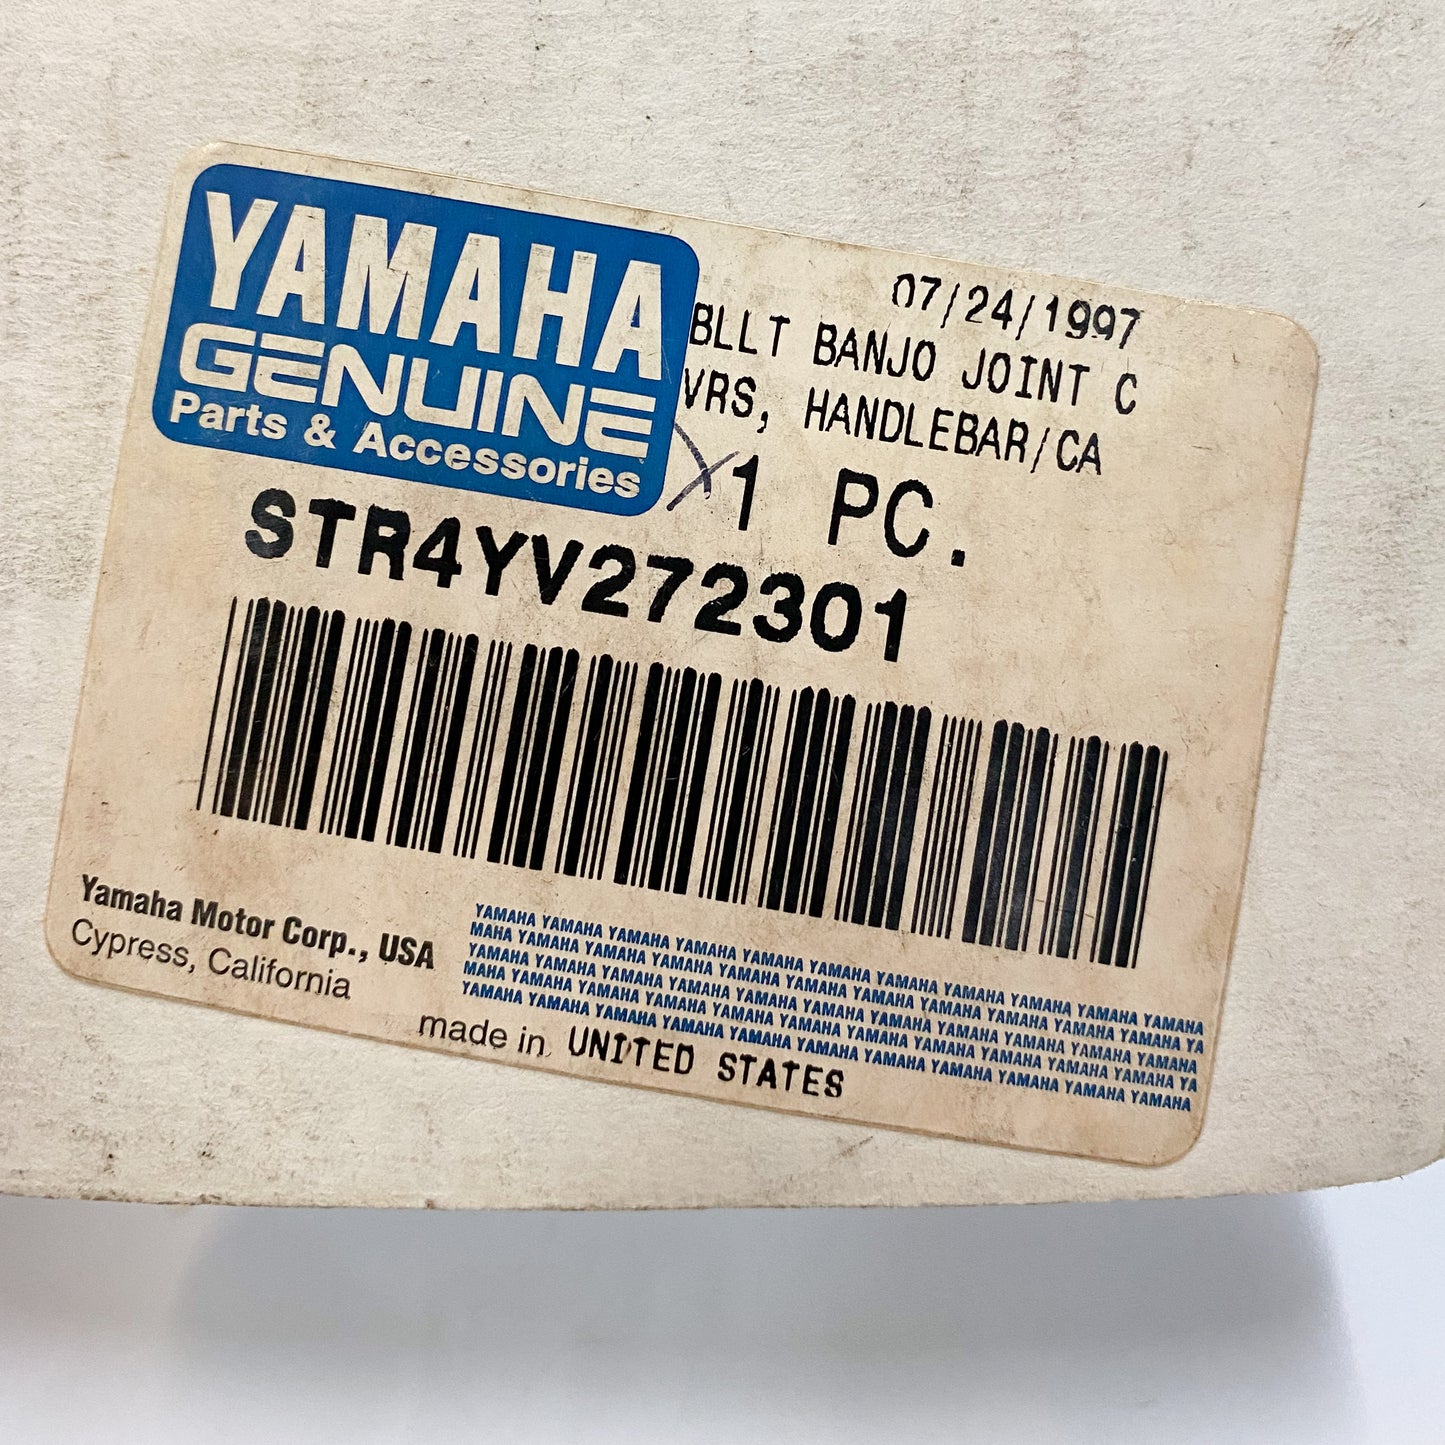 Yamaha Billet Banjo Bolt Covers  STR-4YV27-23-01